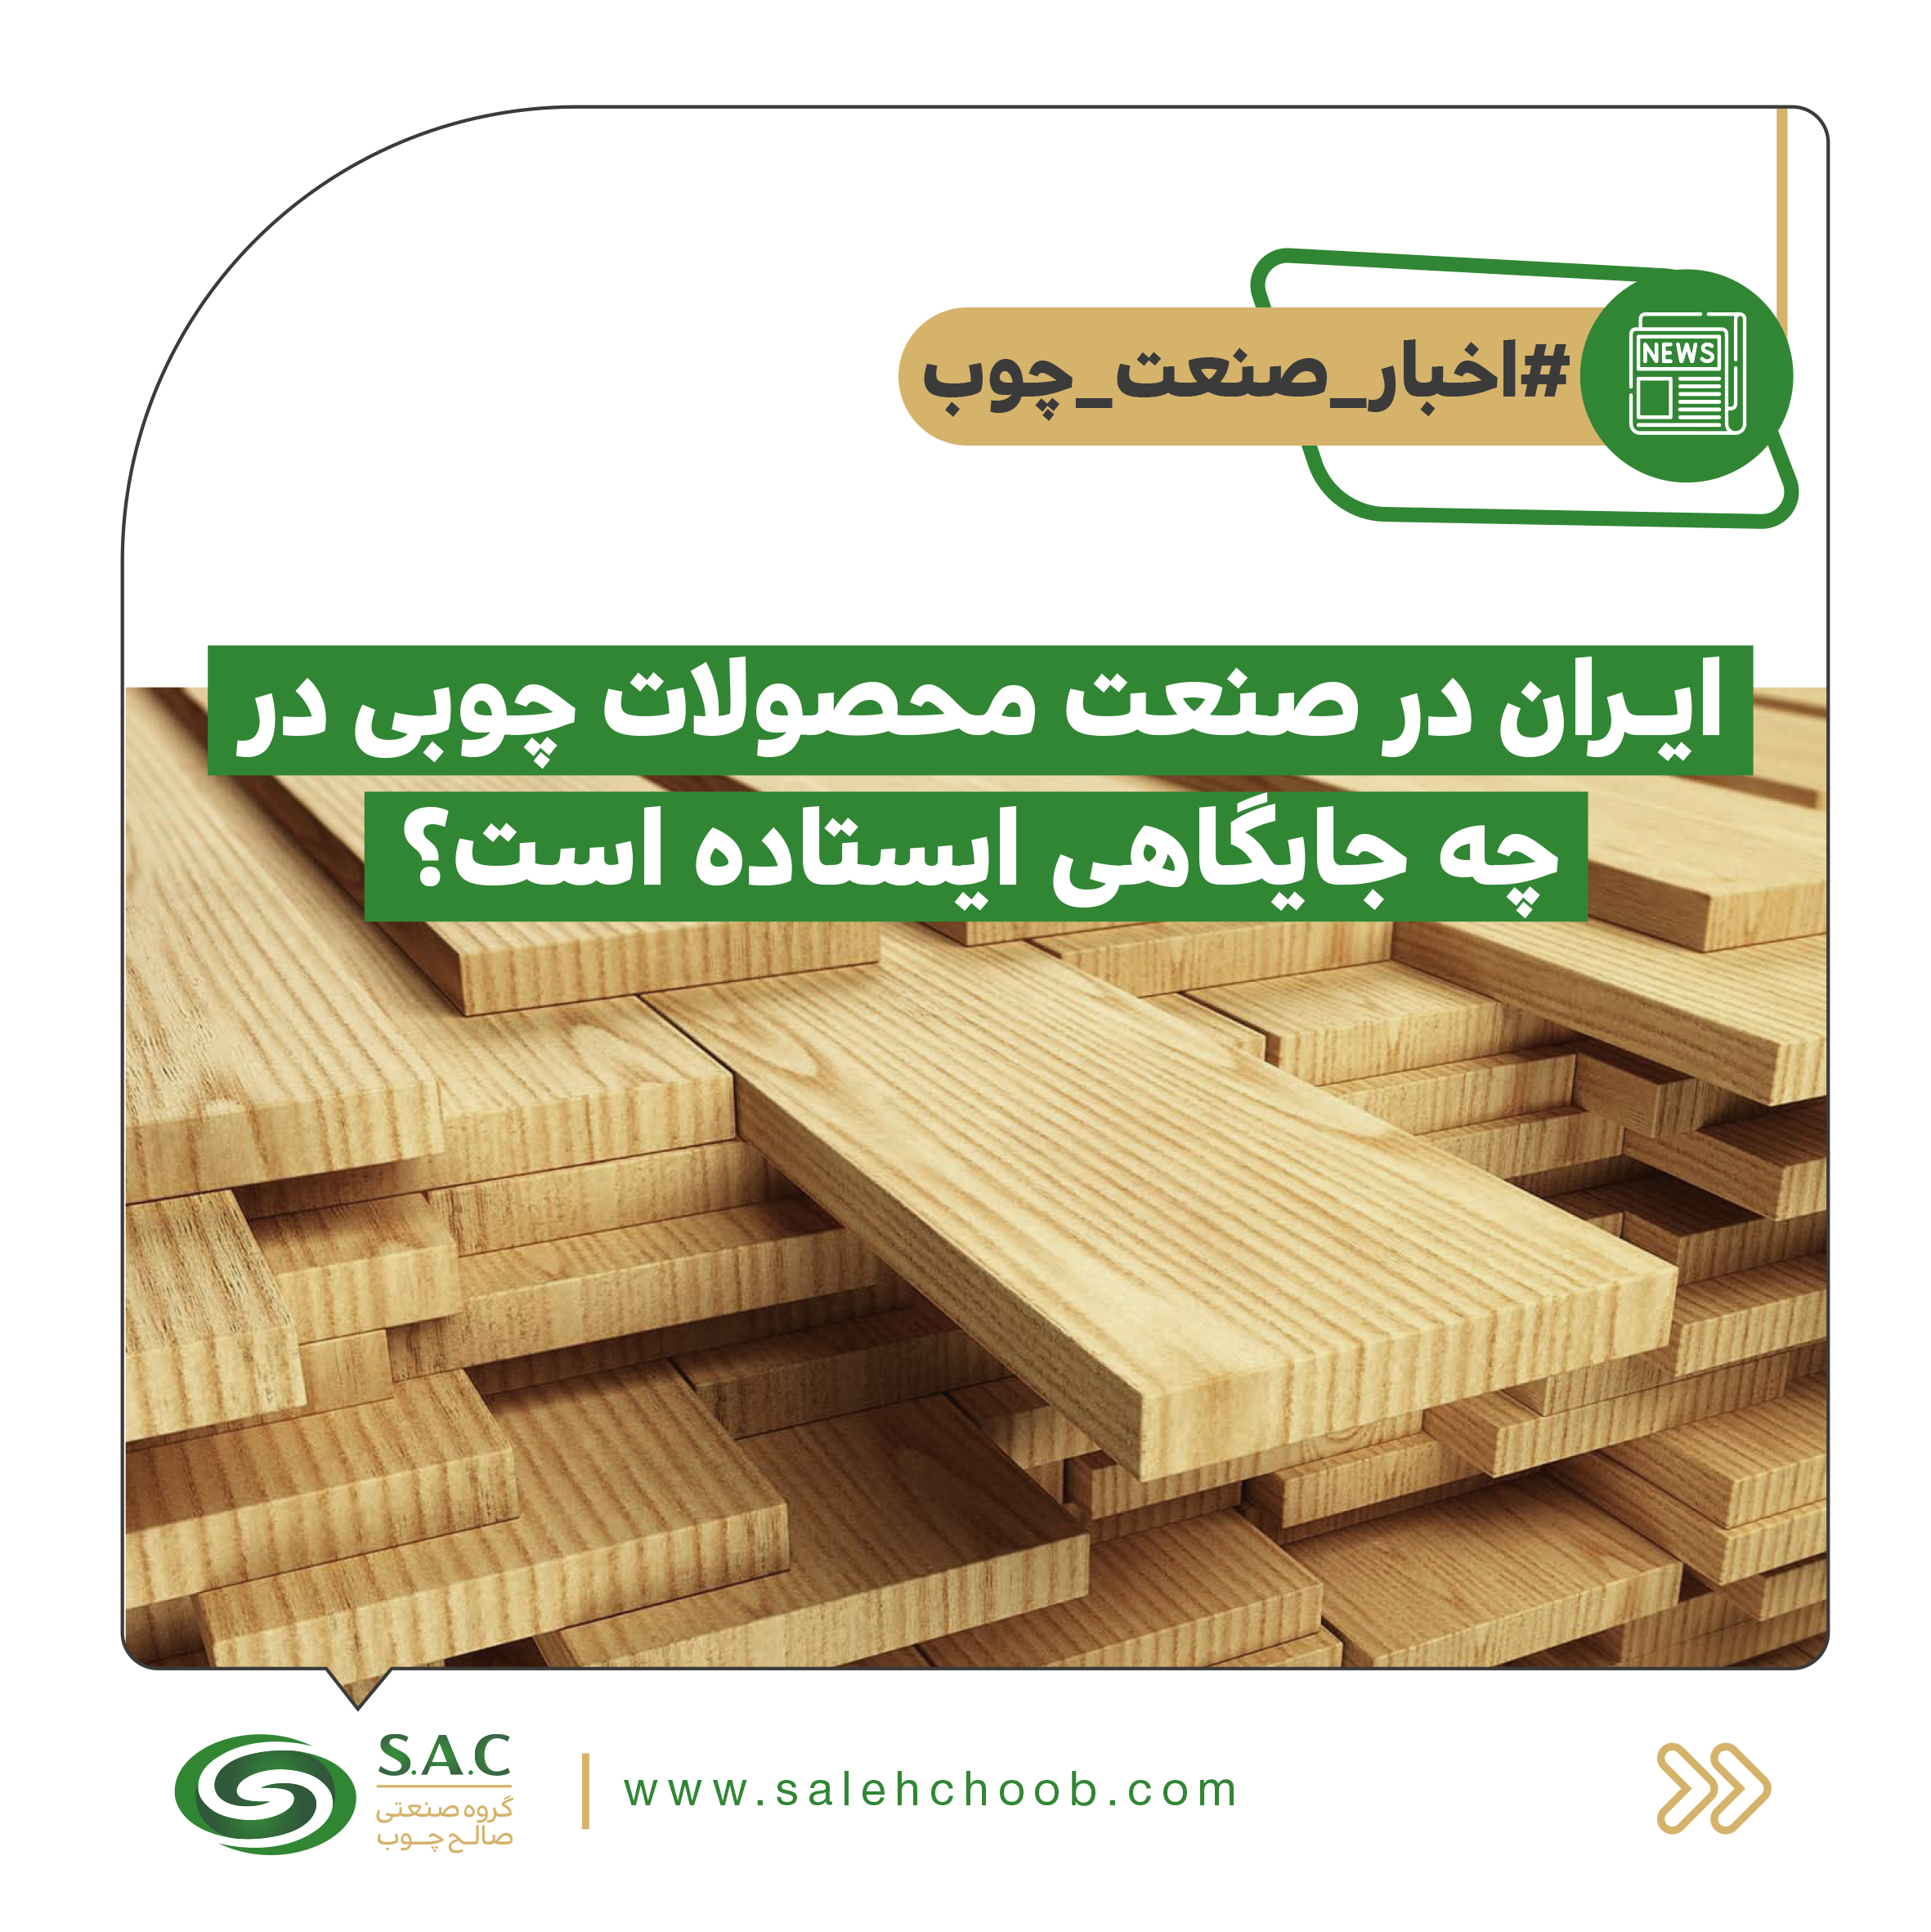 ایران در صنعت محصولات چوبی در چه جایگاهی ایستاده است؟